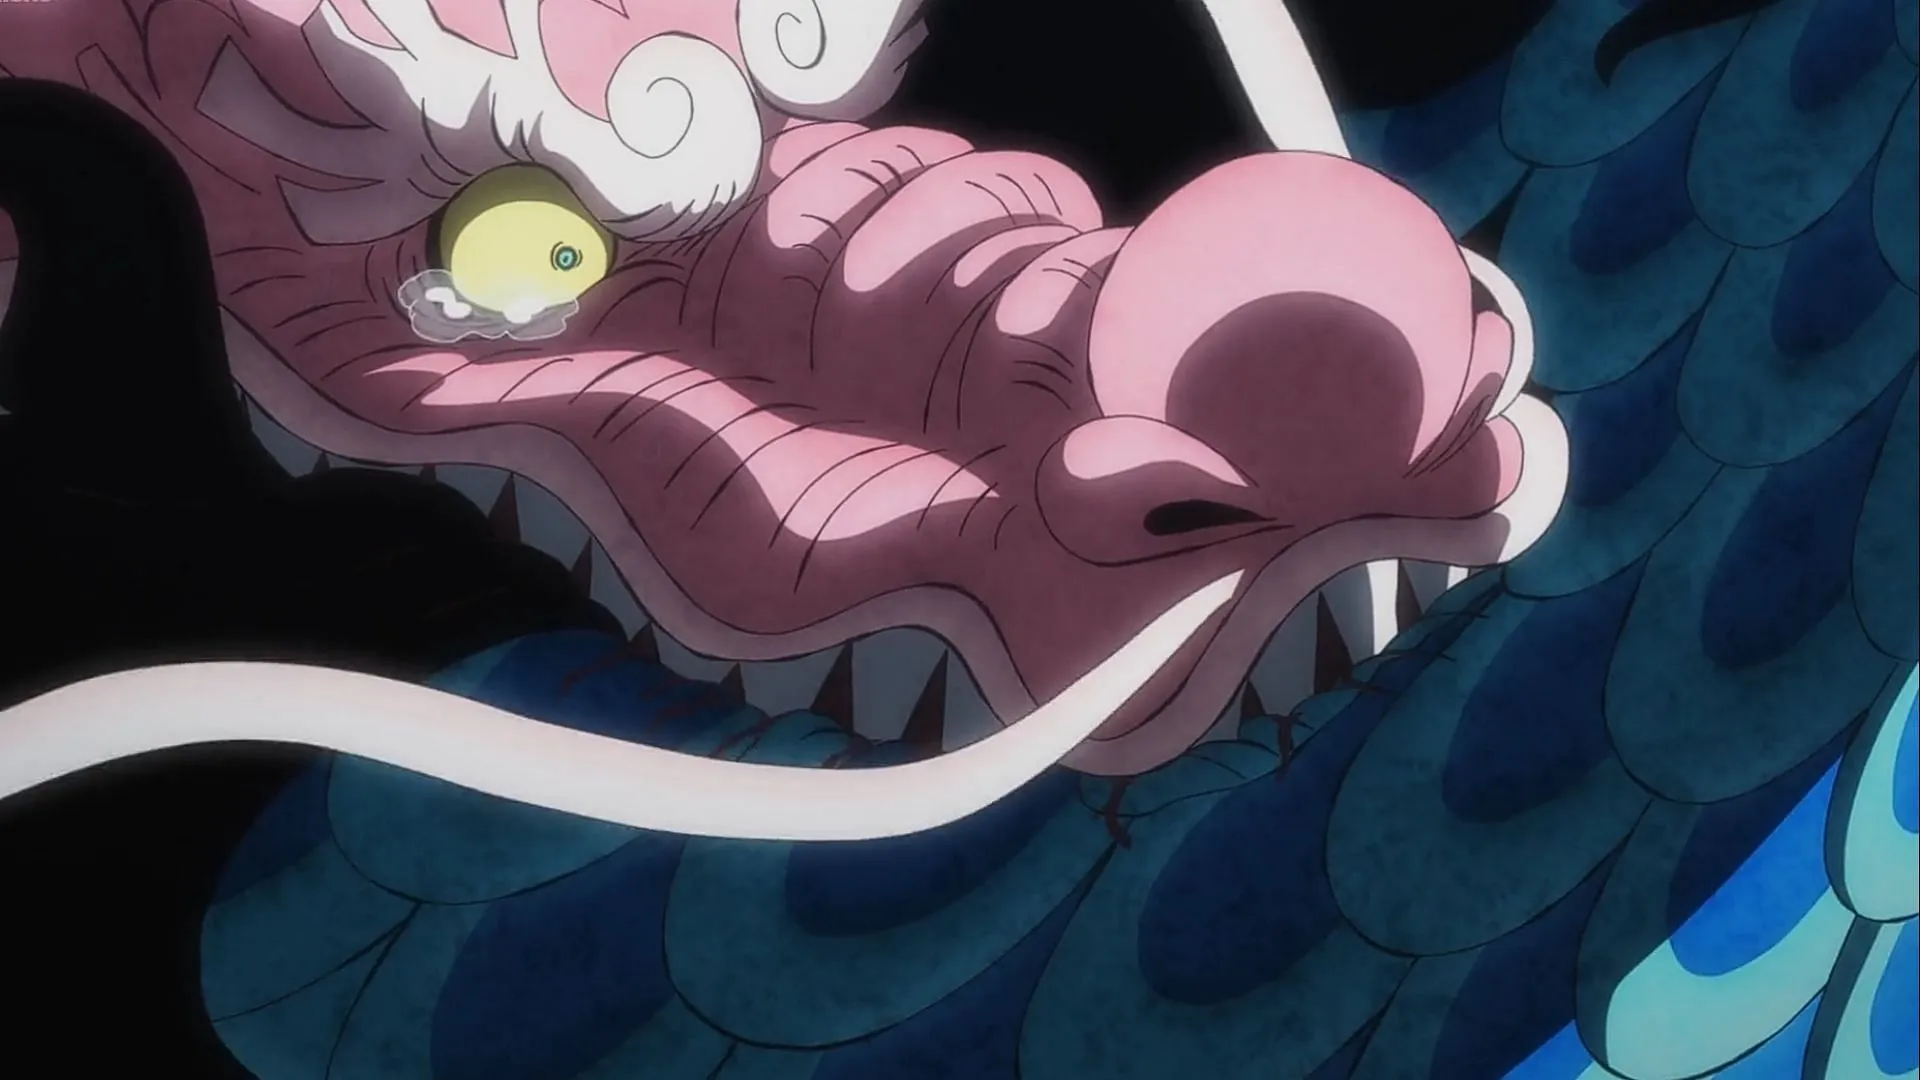 Momonosuke muerde a Kaido en el episodio 1050 de One Piece (Imagen vía Toei Animation)